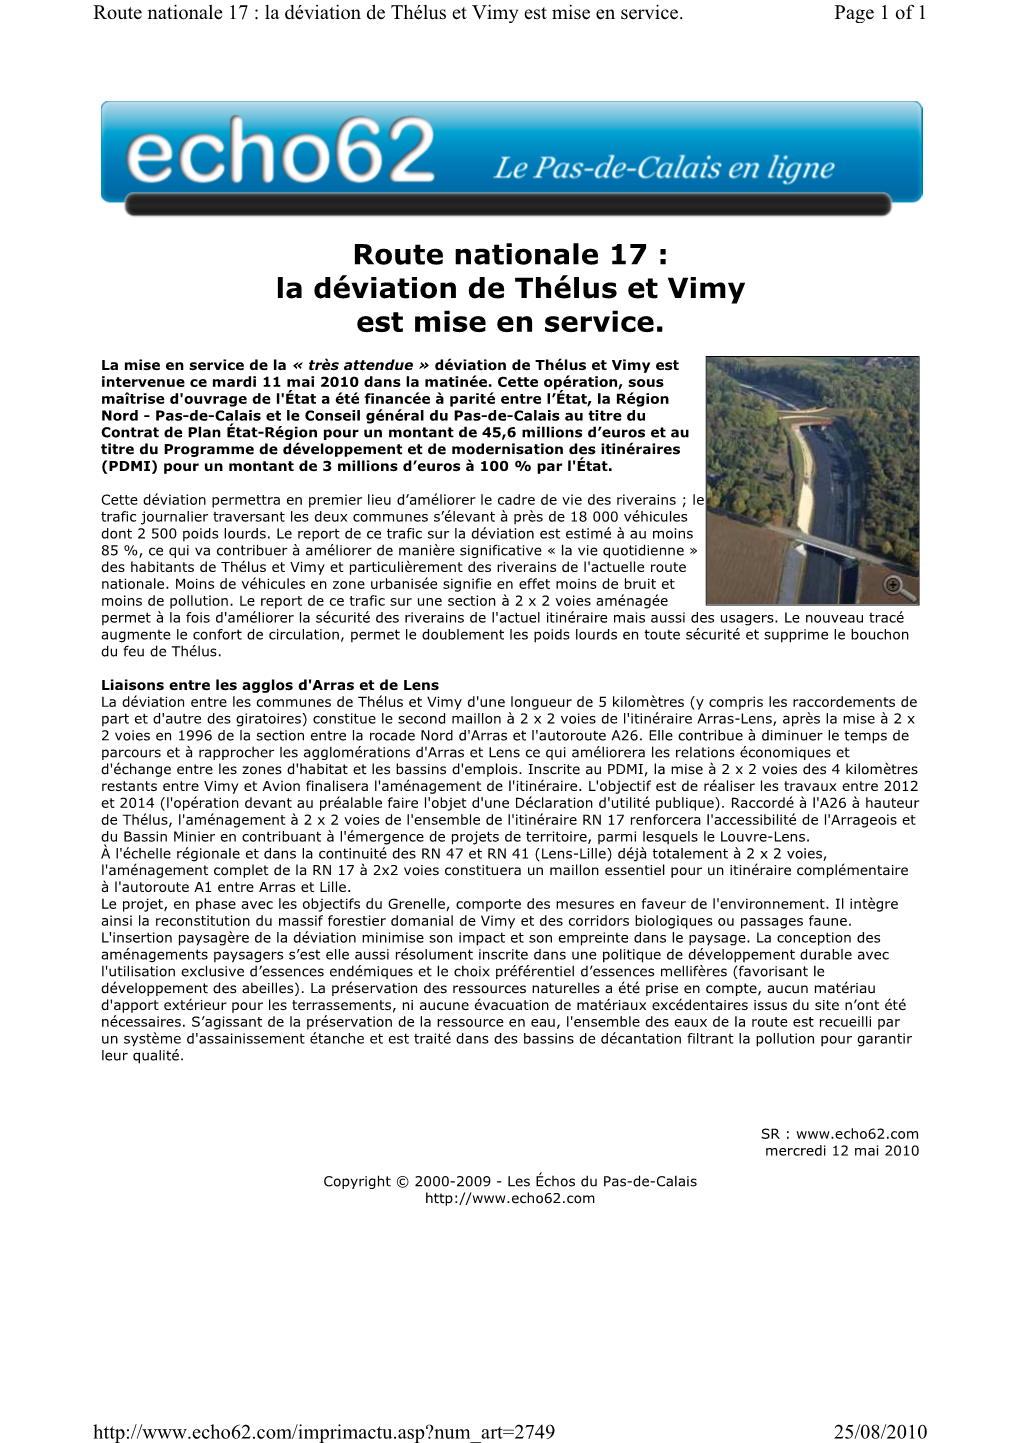 Route Nationale 17 : La Déviation De Thélus Et Vimy Est Mise En Service. Page 1 of 1